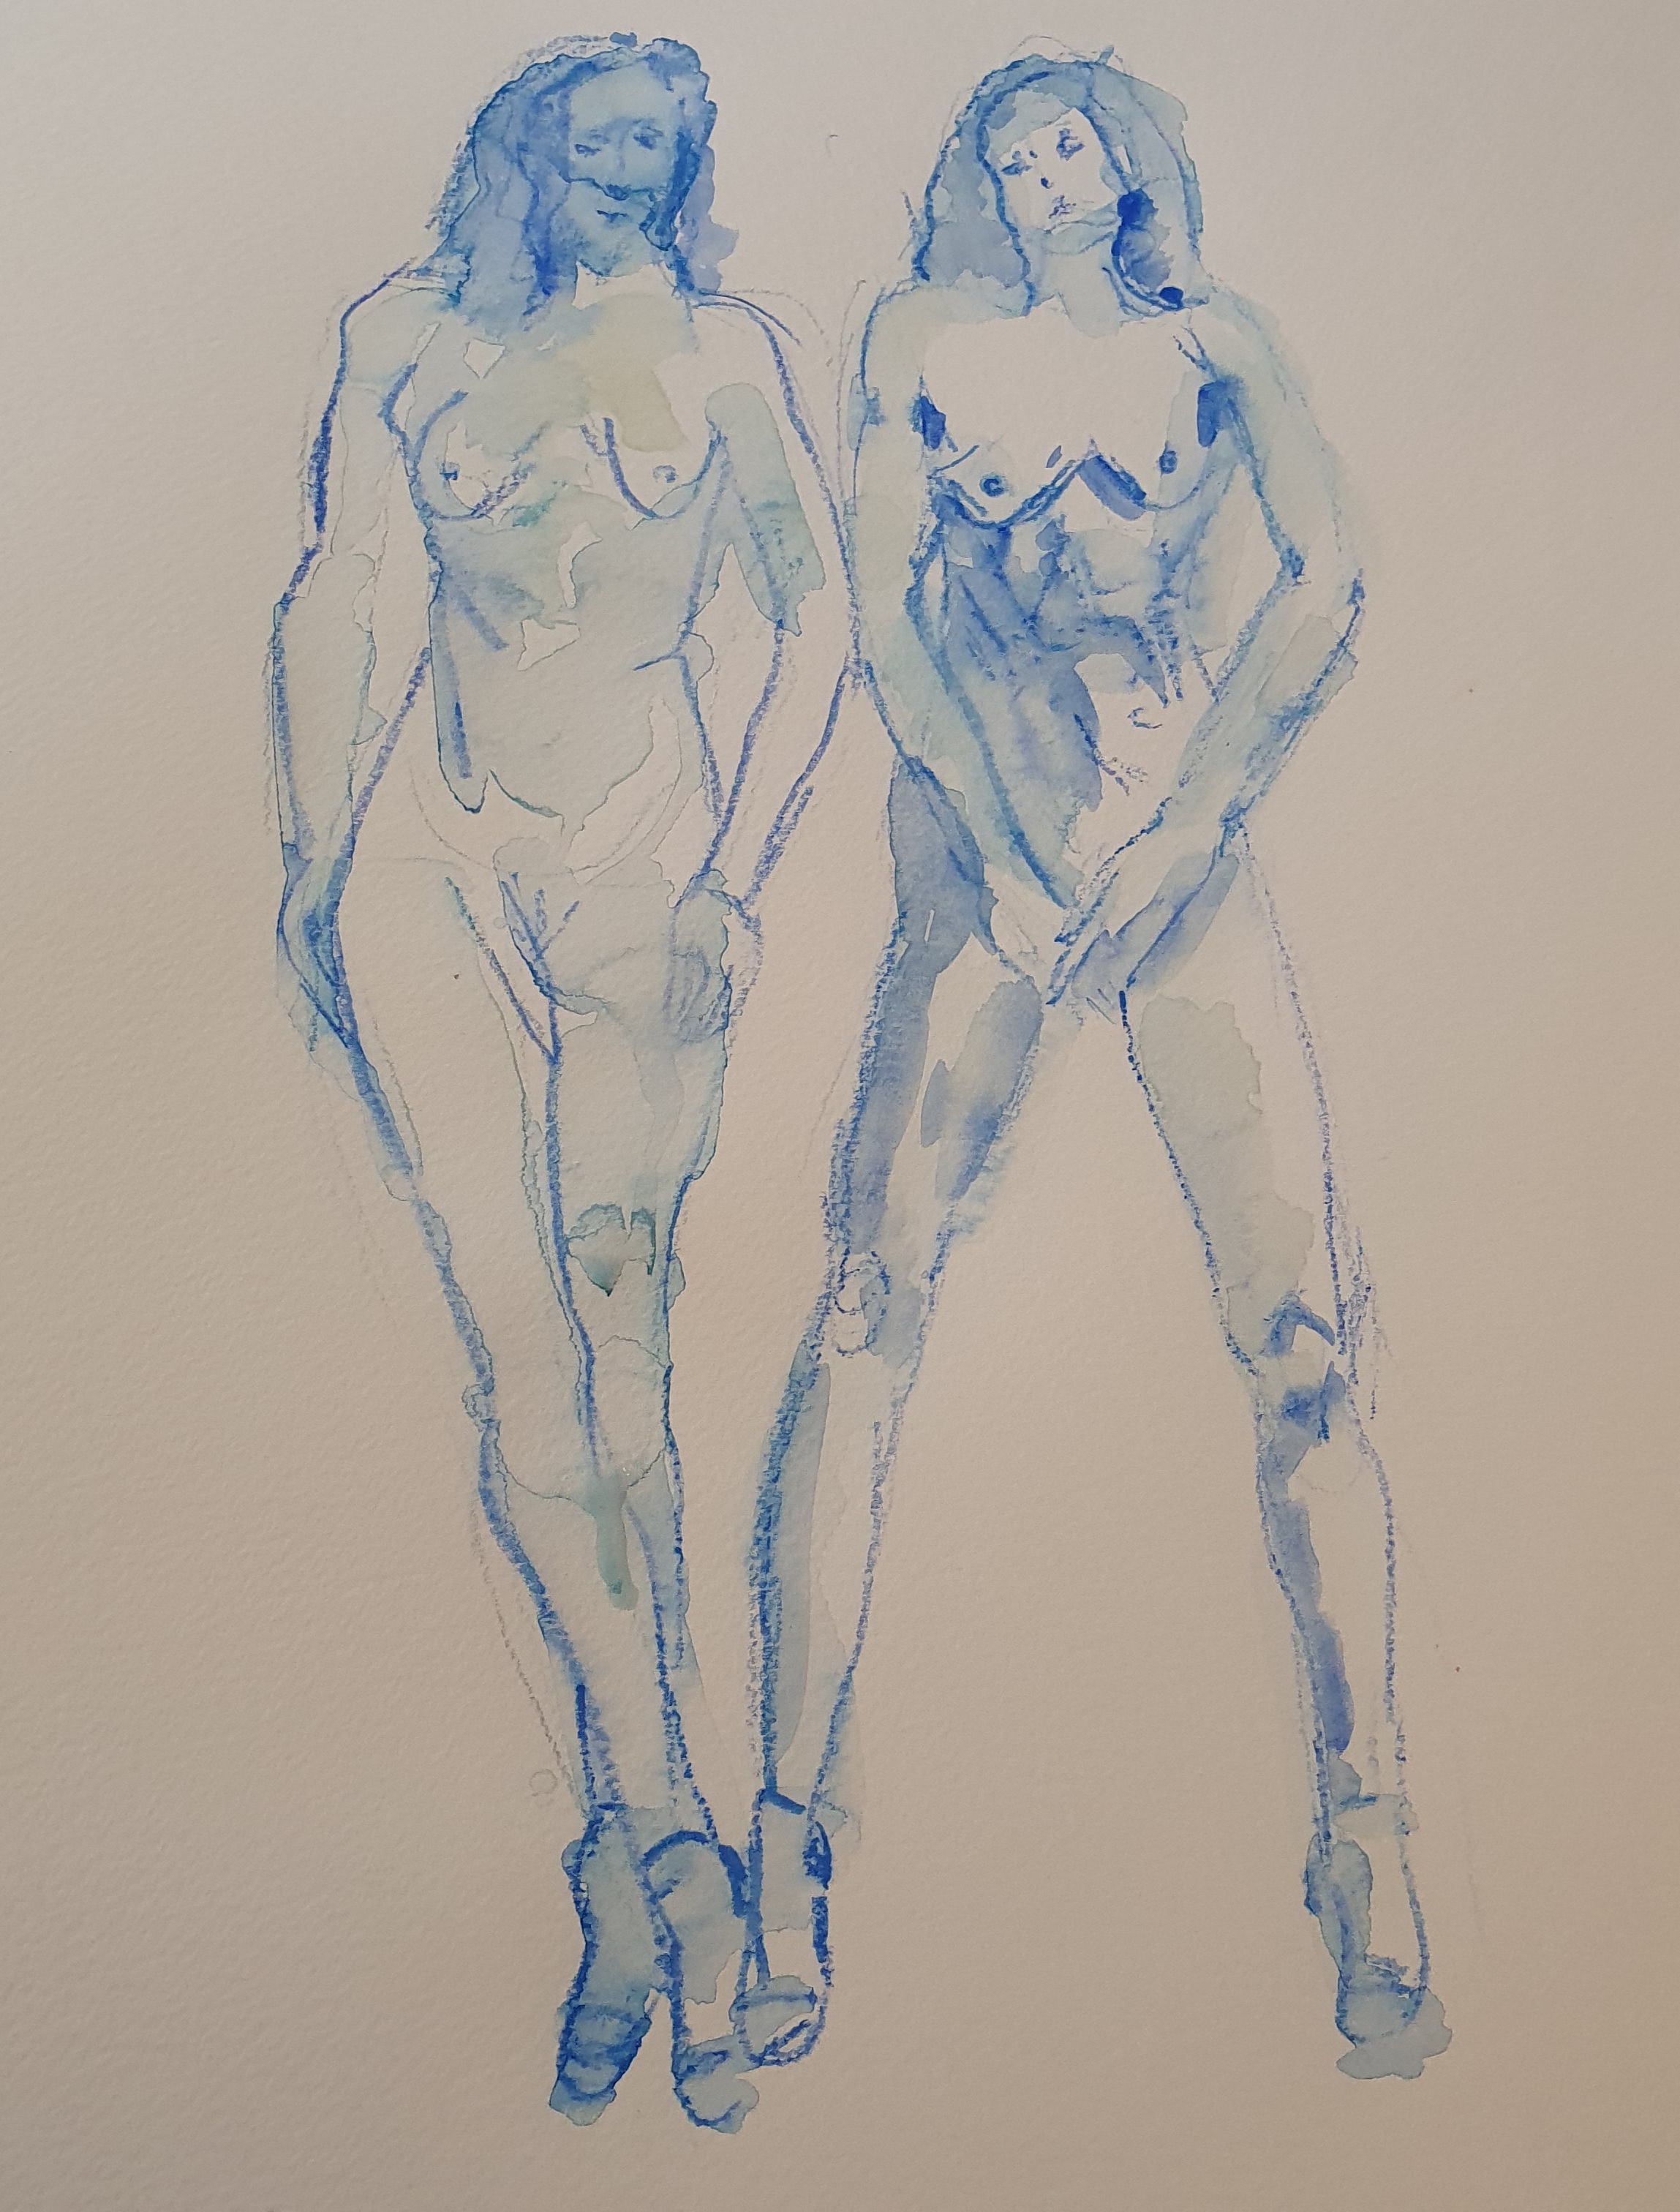  Ãtude femme aquarelle crayon papier deux esquisses face  cours de dessin 